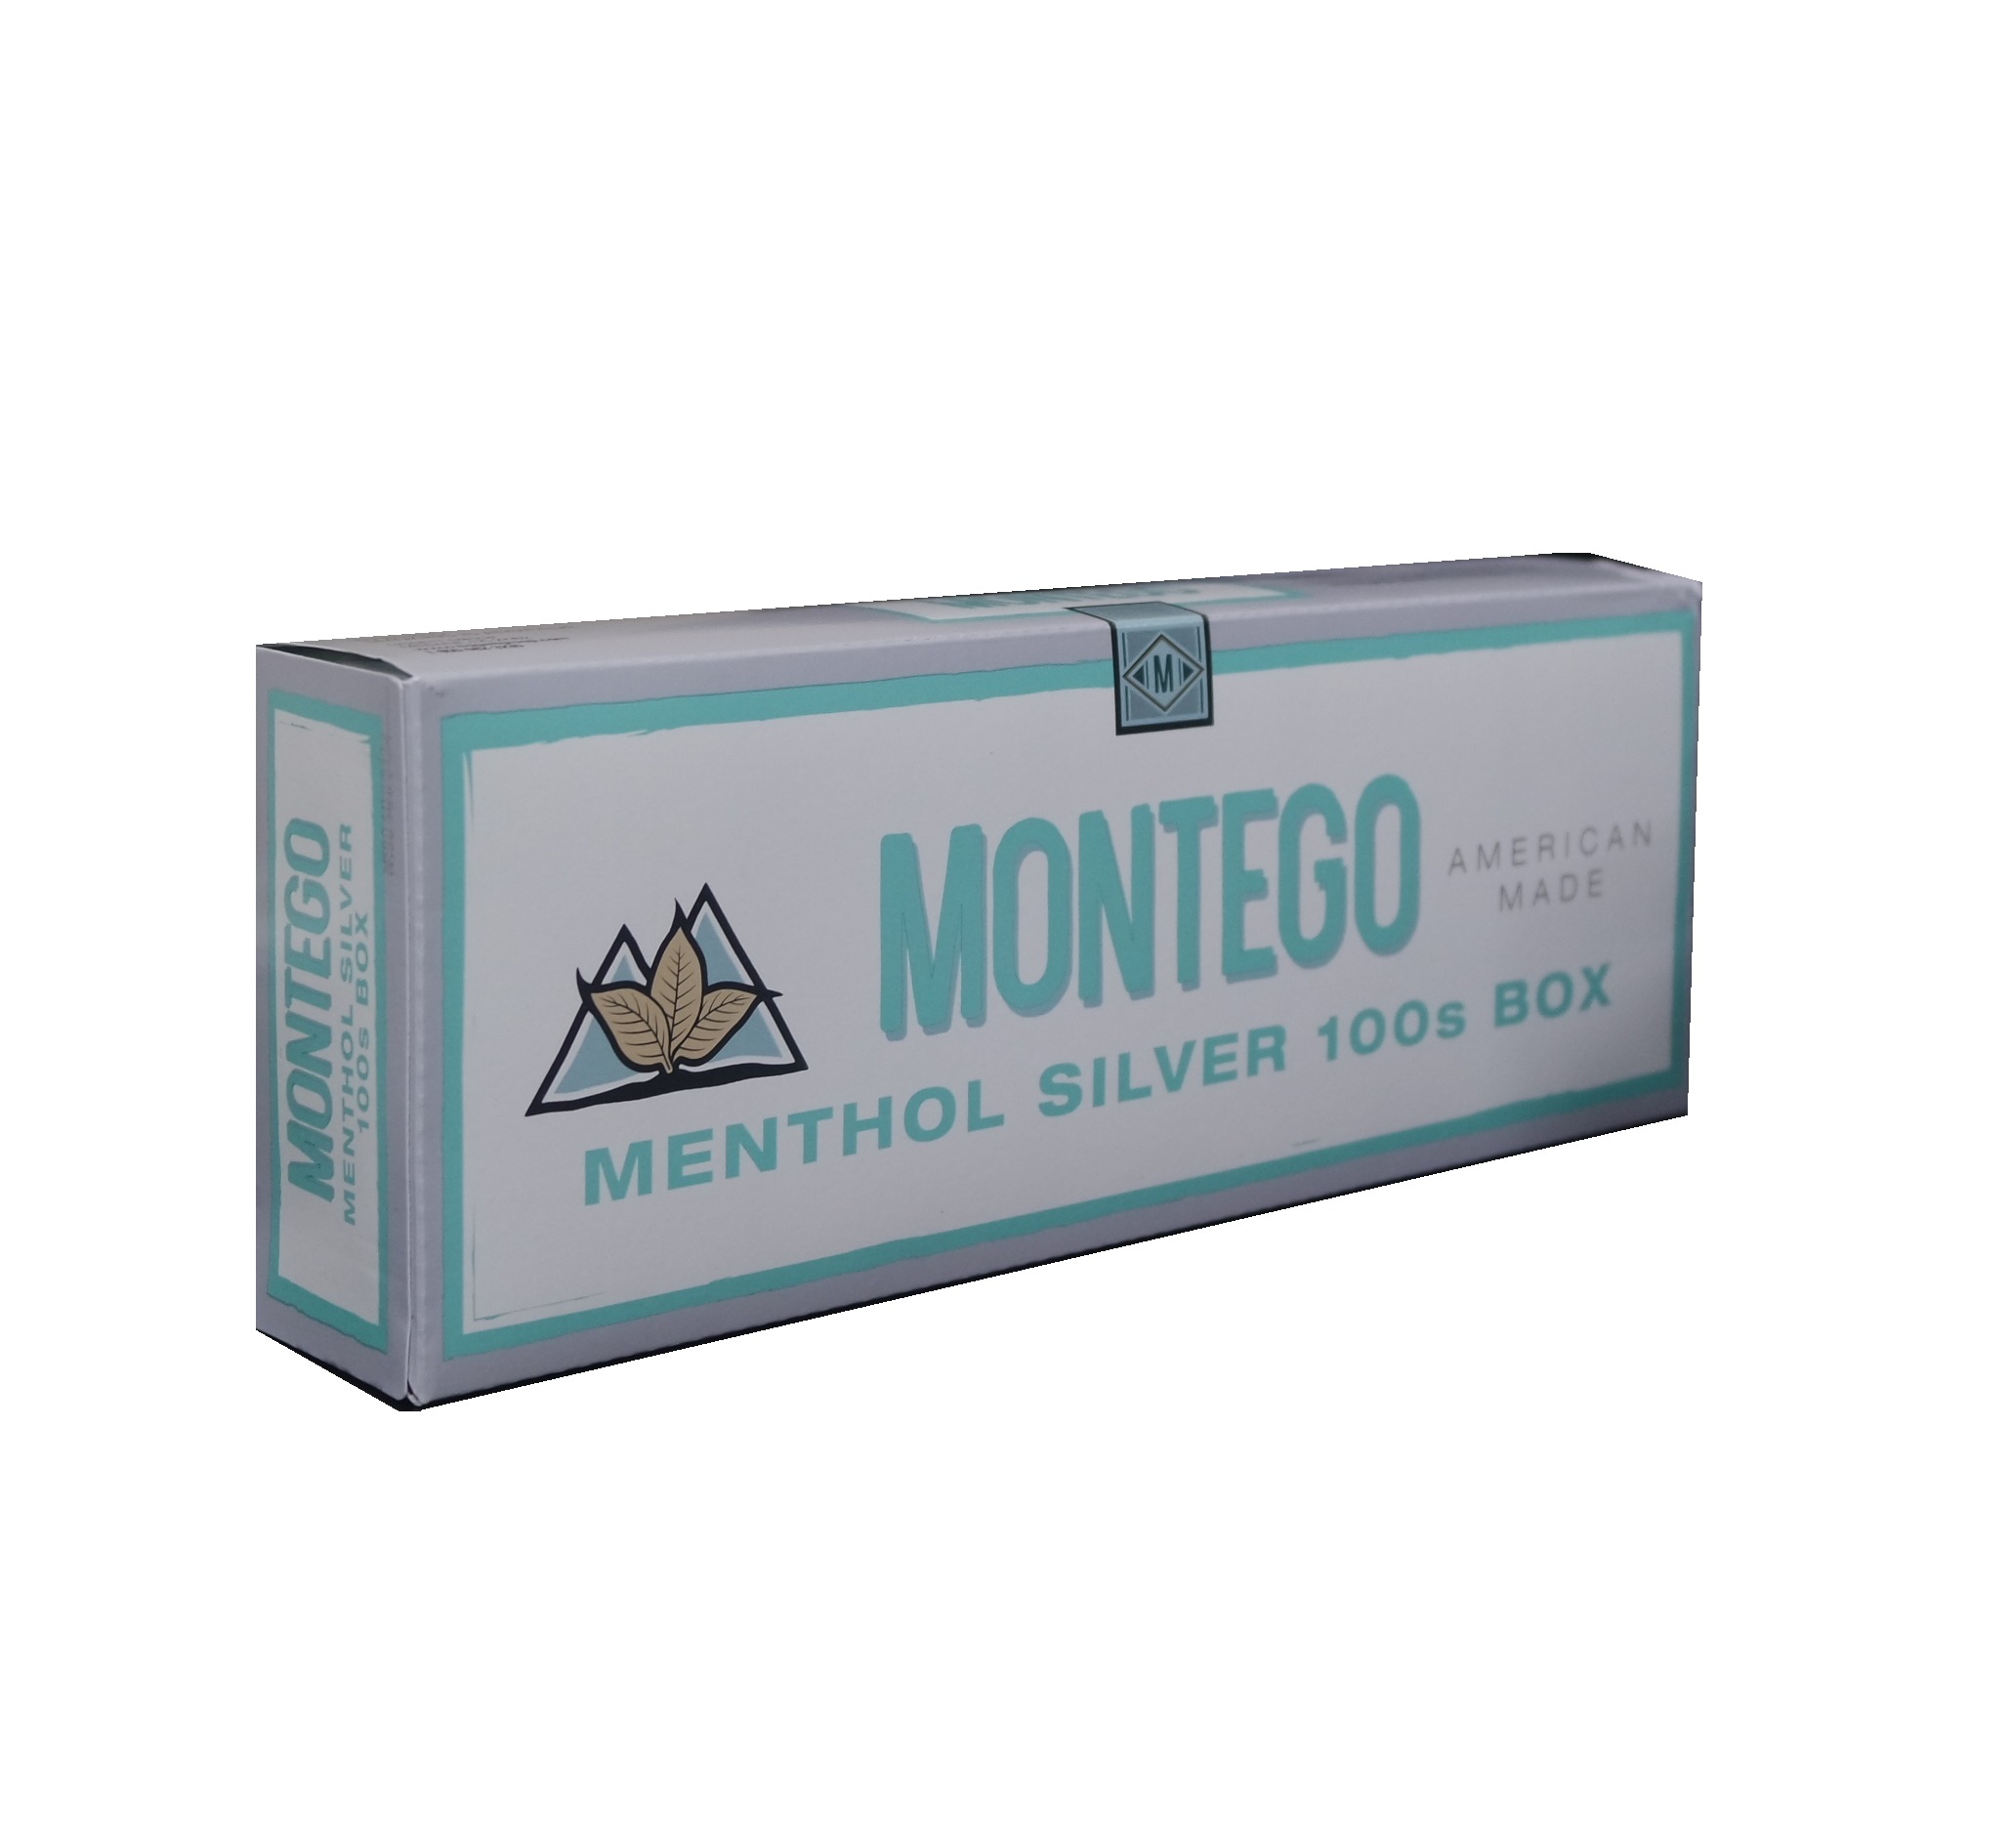 Montego menthol silver 100s box